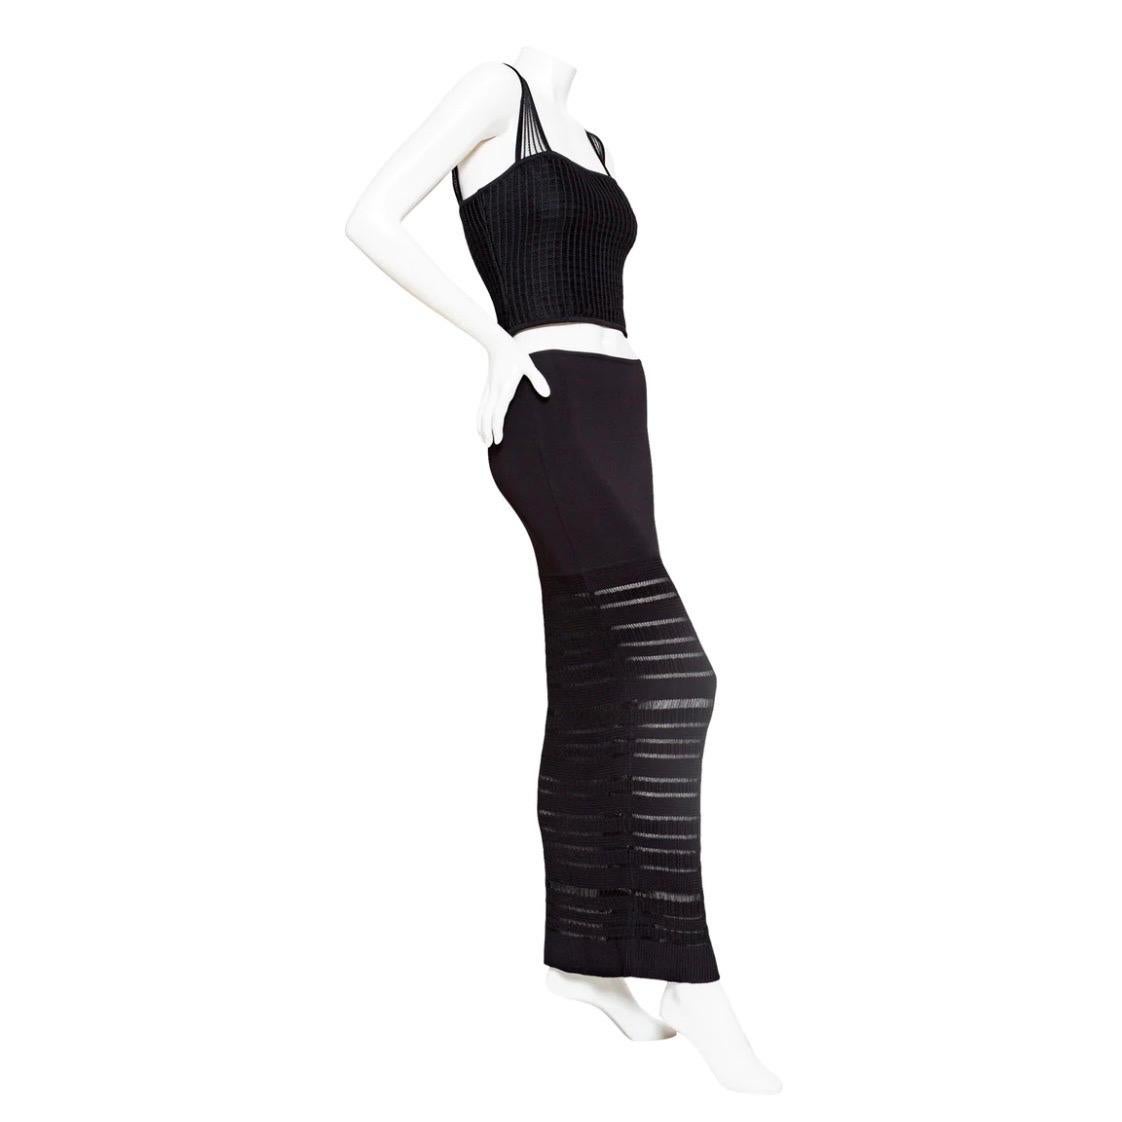 Hervé Léger Black Bodycon Top and Skirt Set

Vintage ; circa 1990
Noir
Tricot extensible tissé
Le top présente de larges bretelles ouvertes en tricot, une encolure carrée, des côtes en forme de boîte, une silhouette légèrement raccourcie et une